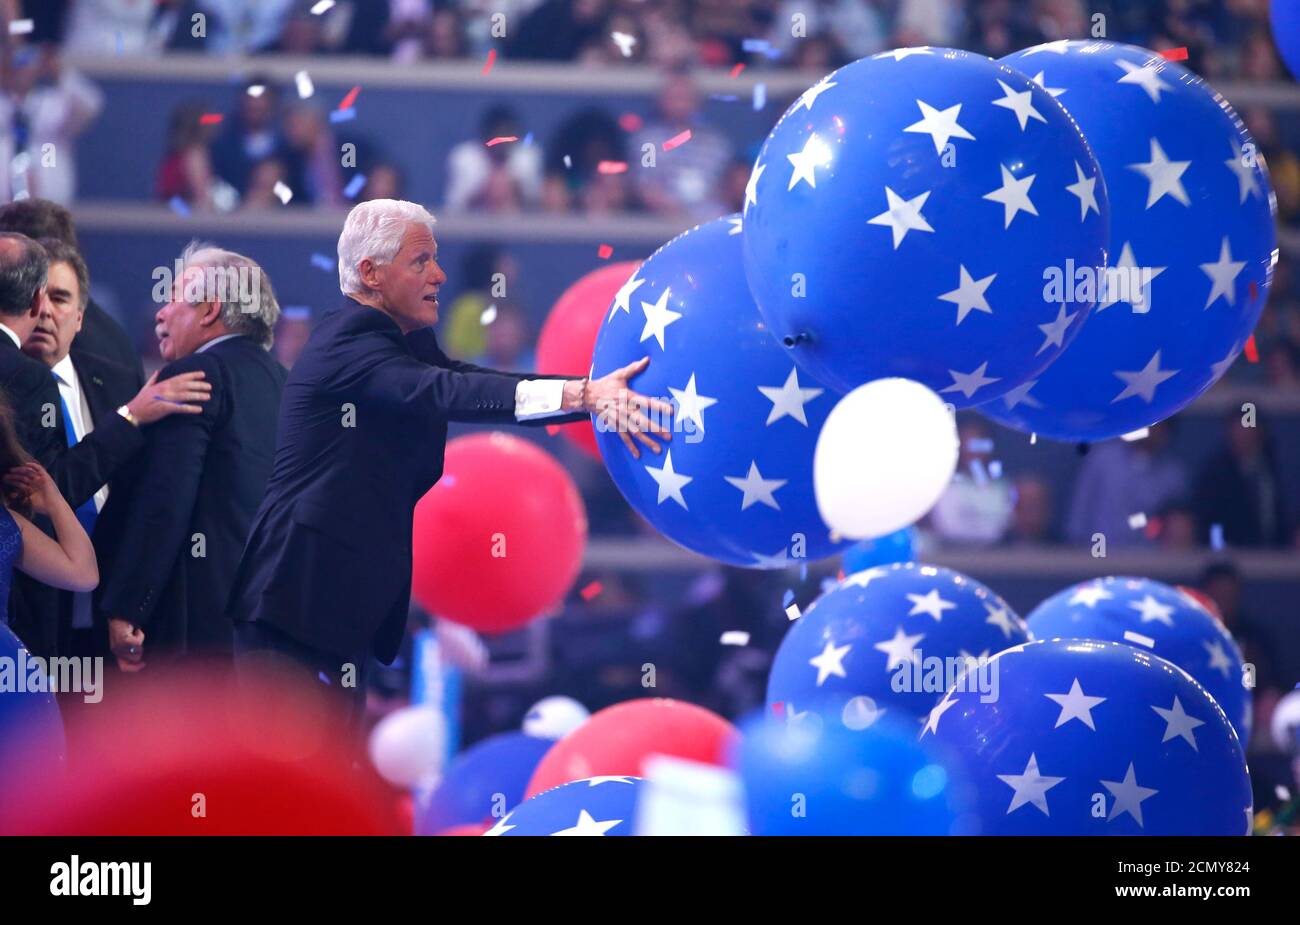 Der ehemalige Präsident Bill Clinton genießt den Ballonverlust, nachdem seine Frau, die Präsidentschaftskandidatin der Demokraten Hillary Clinton, die Nominierung am vierten und letzten Abend bei der Democratic National Convention in Philadelphia, Pennsylvania, USA, am 28. Juli 2016 angenommen hatte. REUTERS/Lucy Nicholson Stockfoto